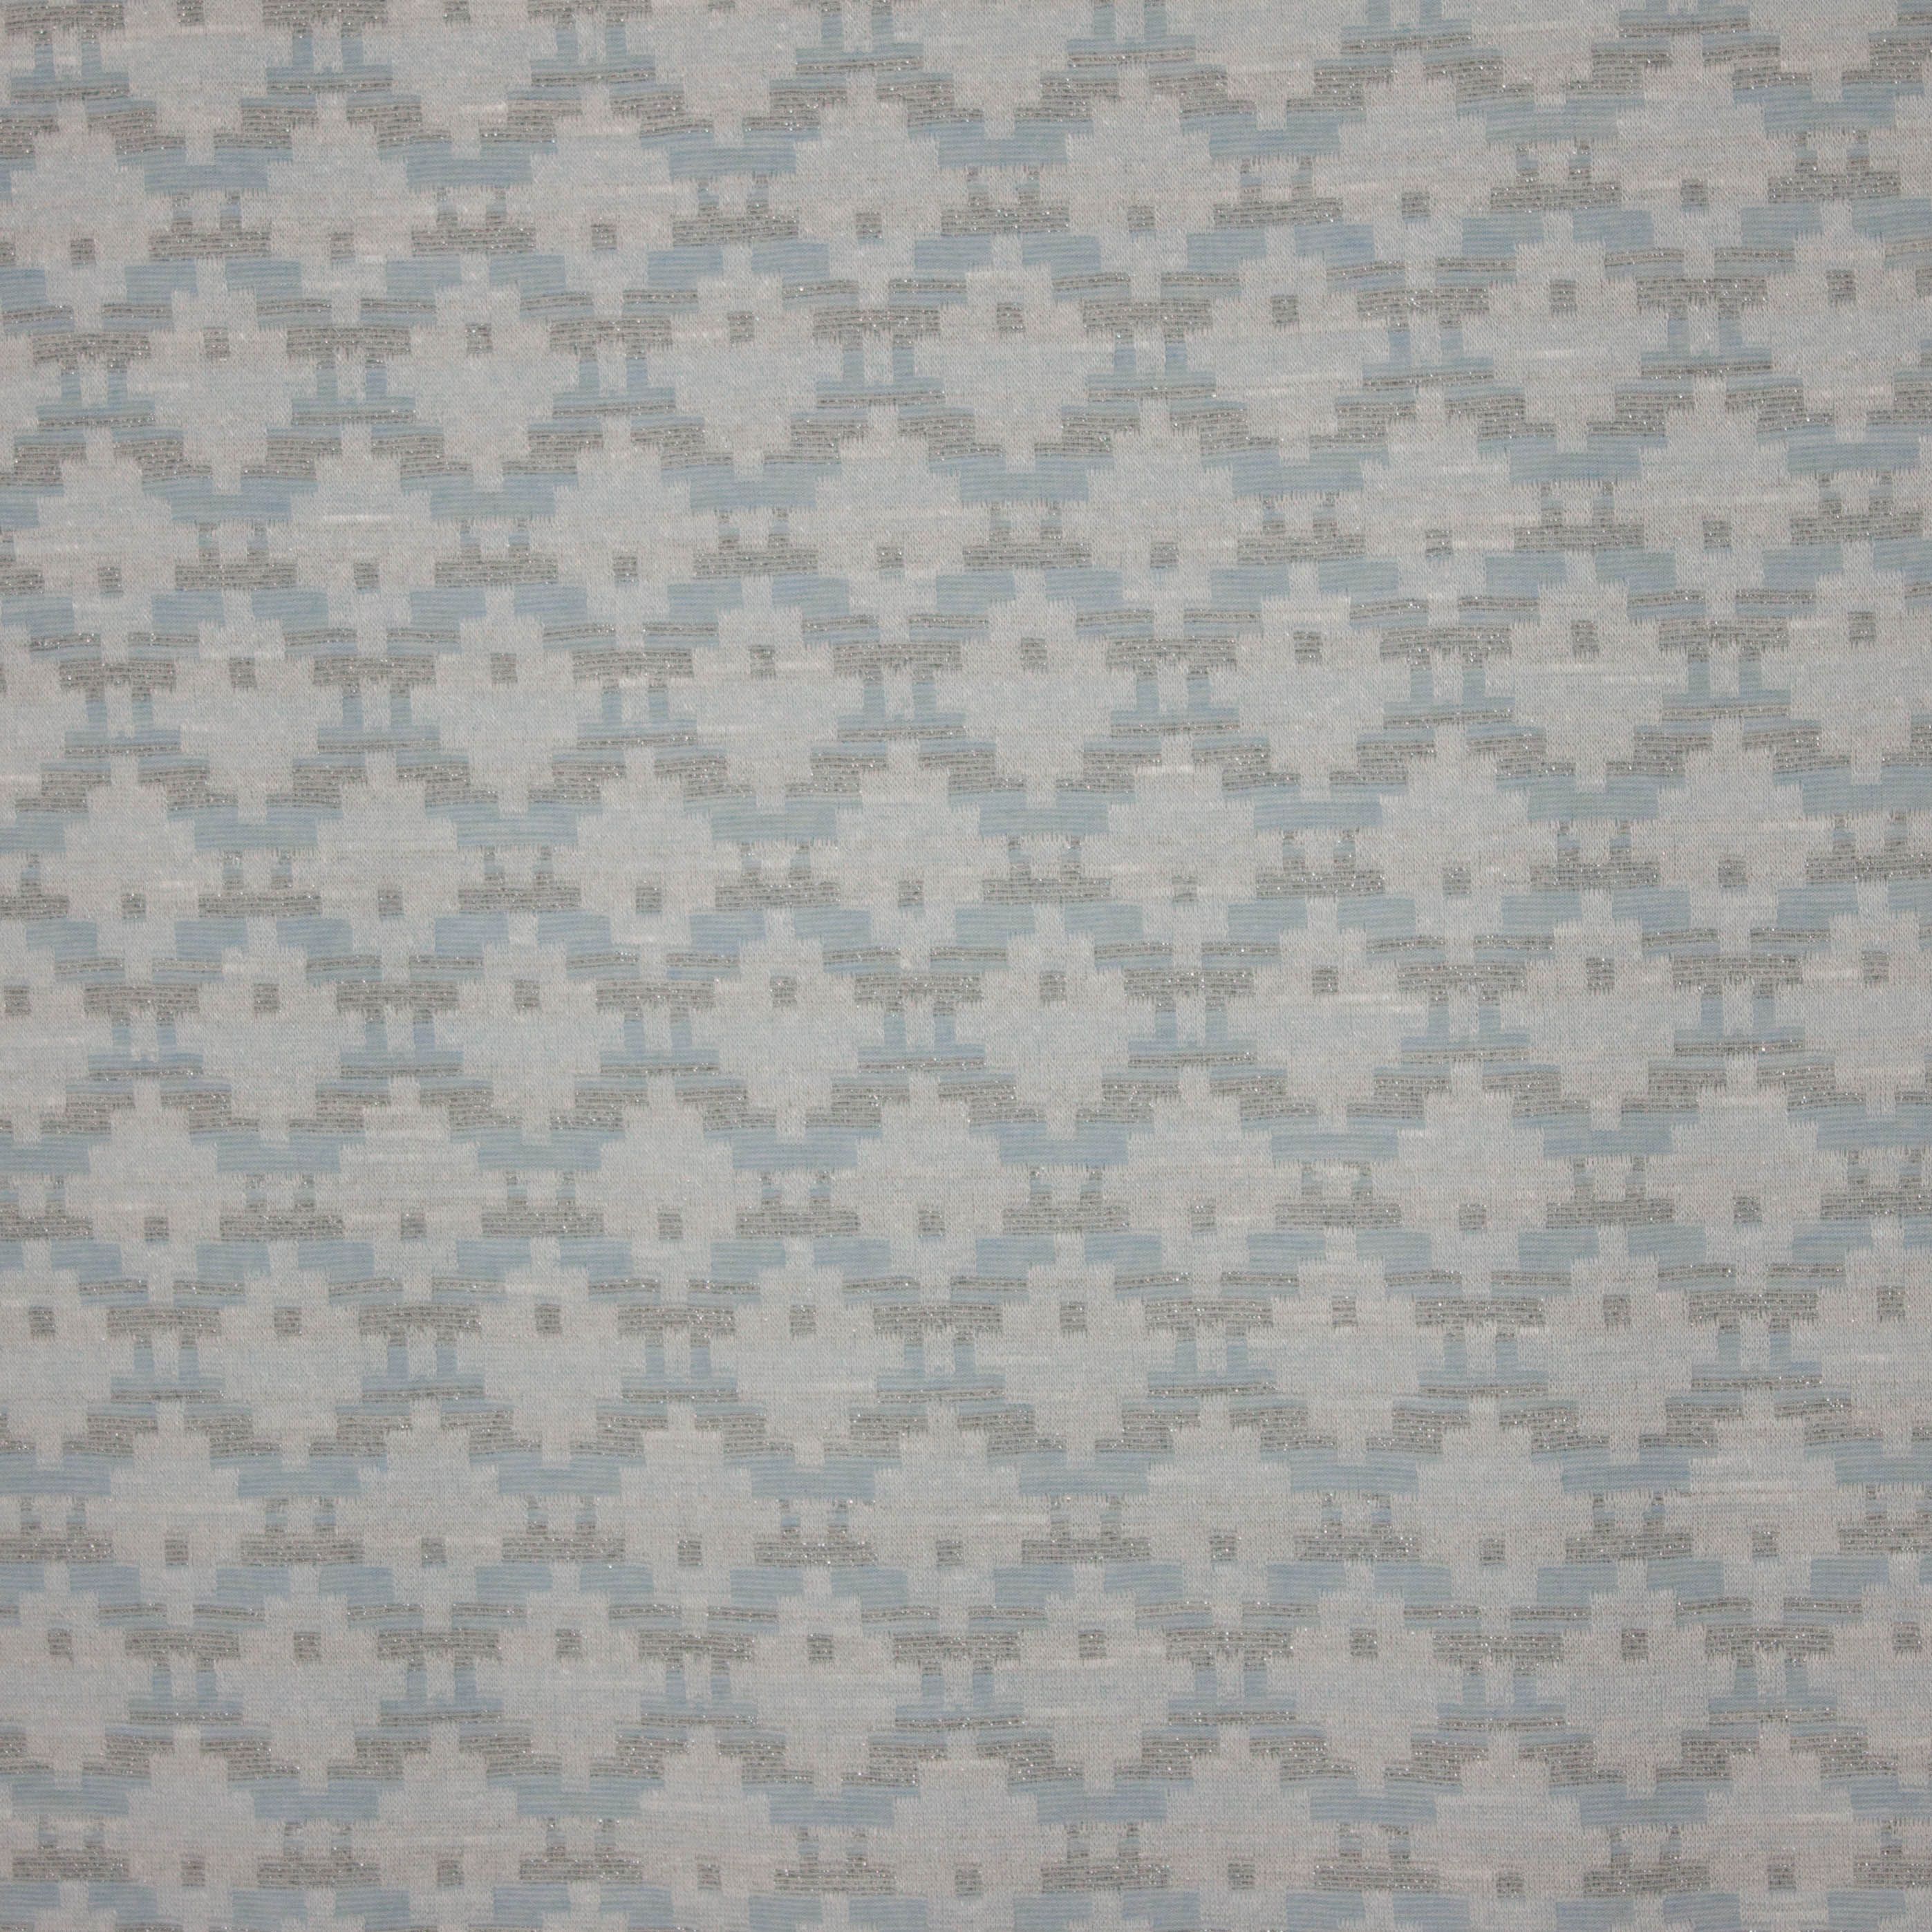 Fijn breitje met geometrische motief in wit, lichtblauw en zilveren glitter